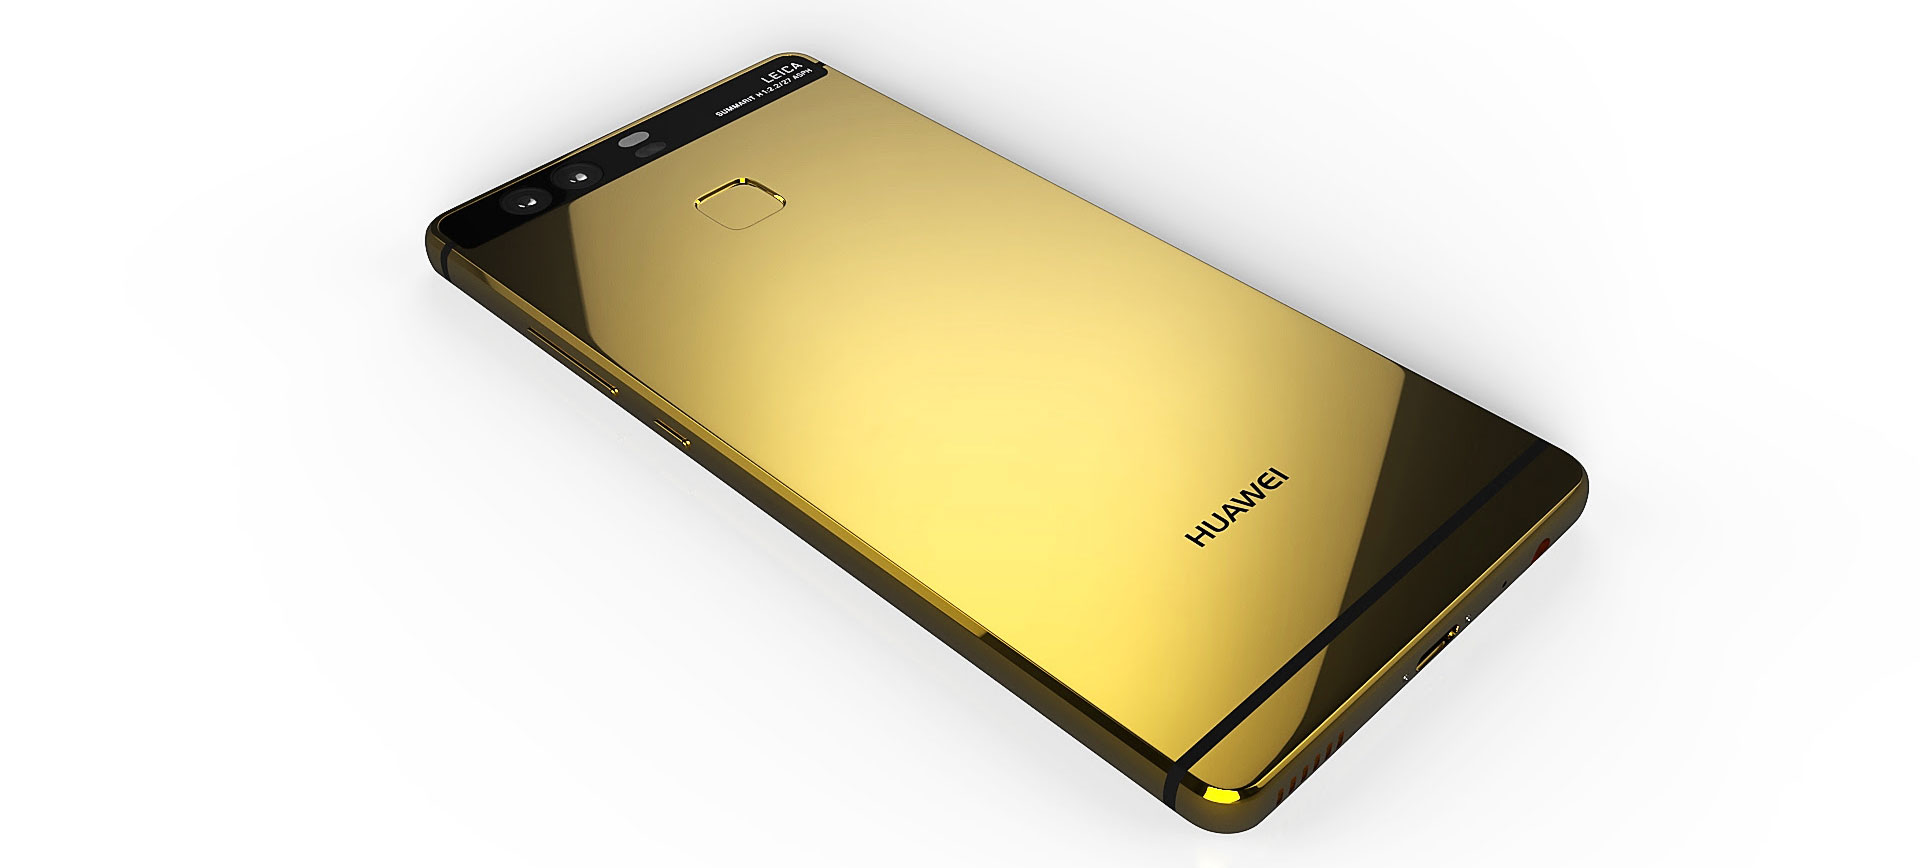 Корпус телефона хуавей. Хуавей Голд. Хуавей золотой корпус. Huawei золотой 2015. Хуавей золотой матовый.